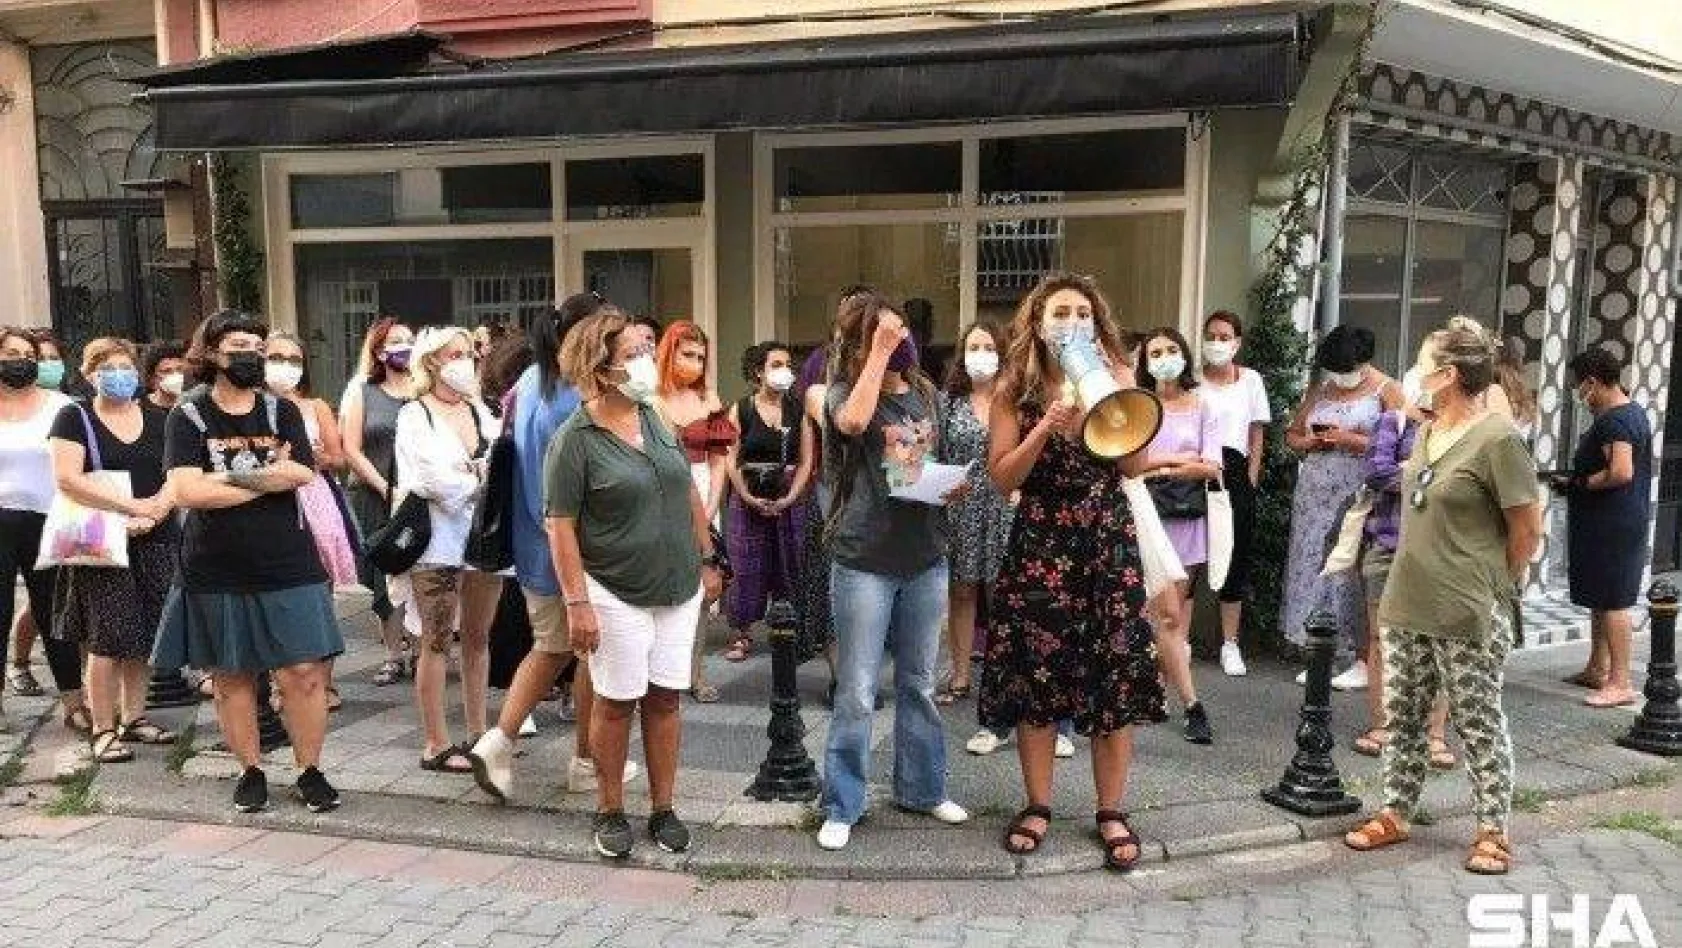 Kadıköy'de 17 yaşında kız çocuğuna iğrenç tacize kadınlardan protesto